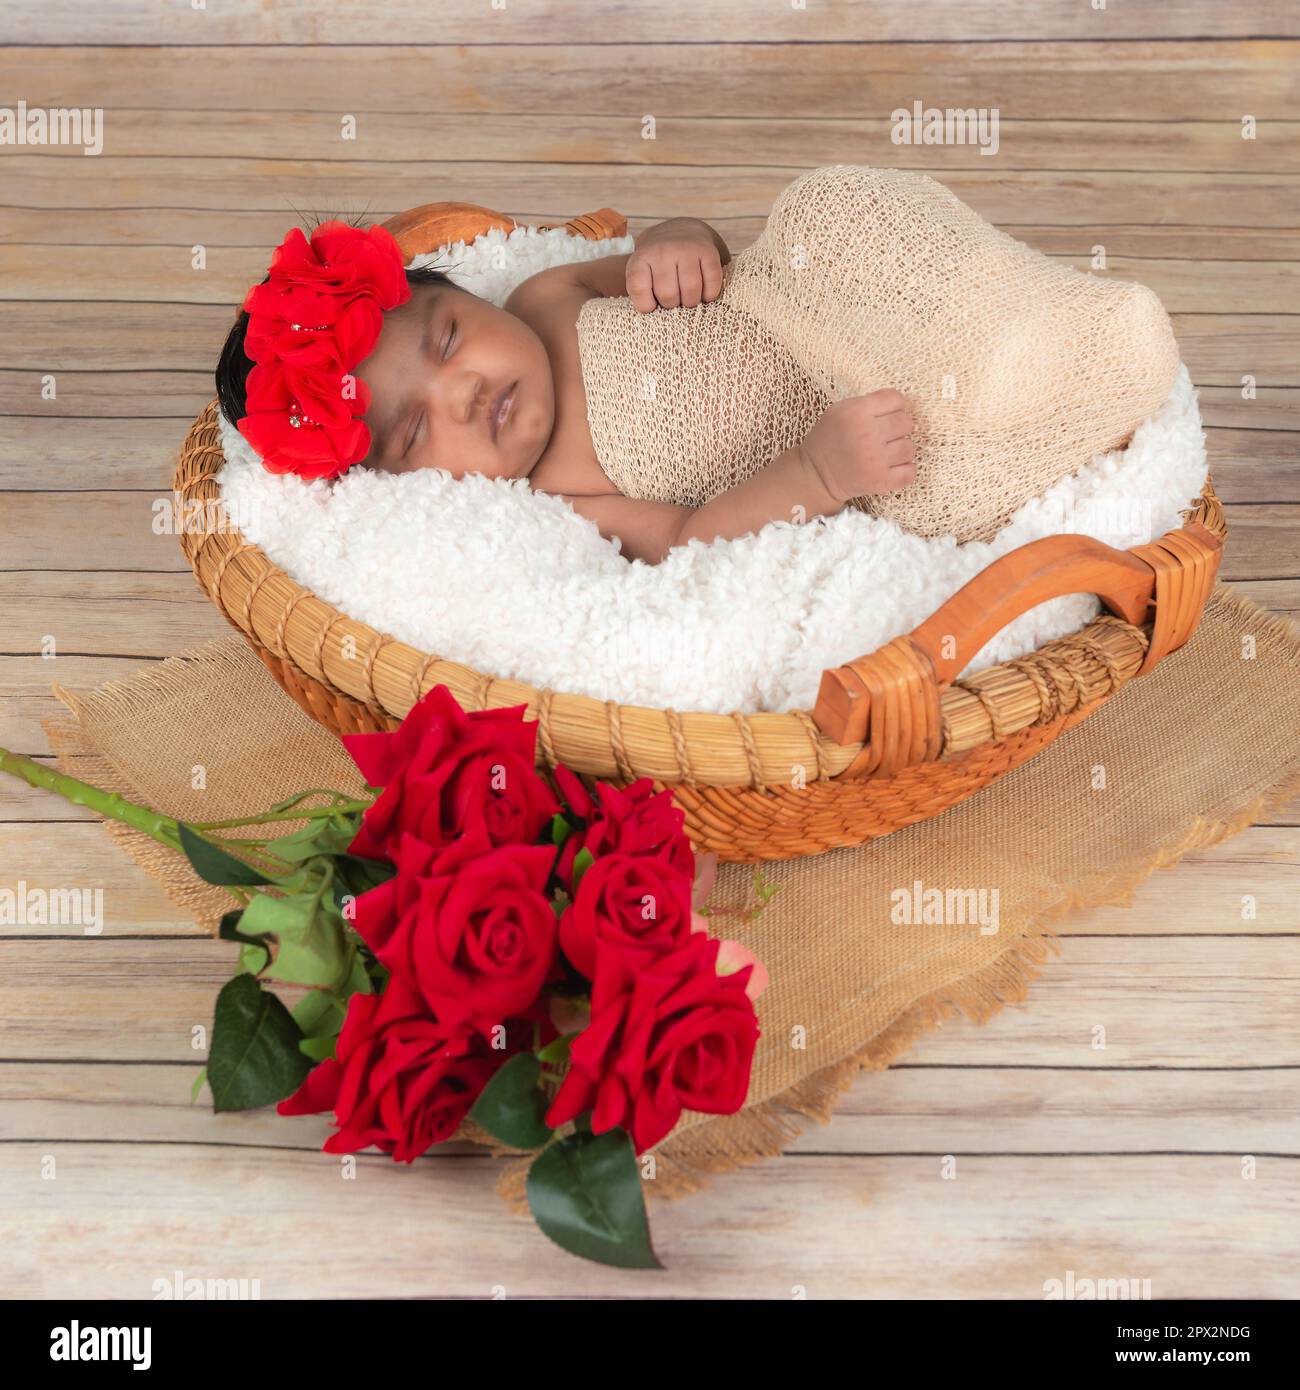 Babymädchen Schlafstudio Fotoshooting Rosen und Korb auf Holzboden Stockfoto